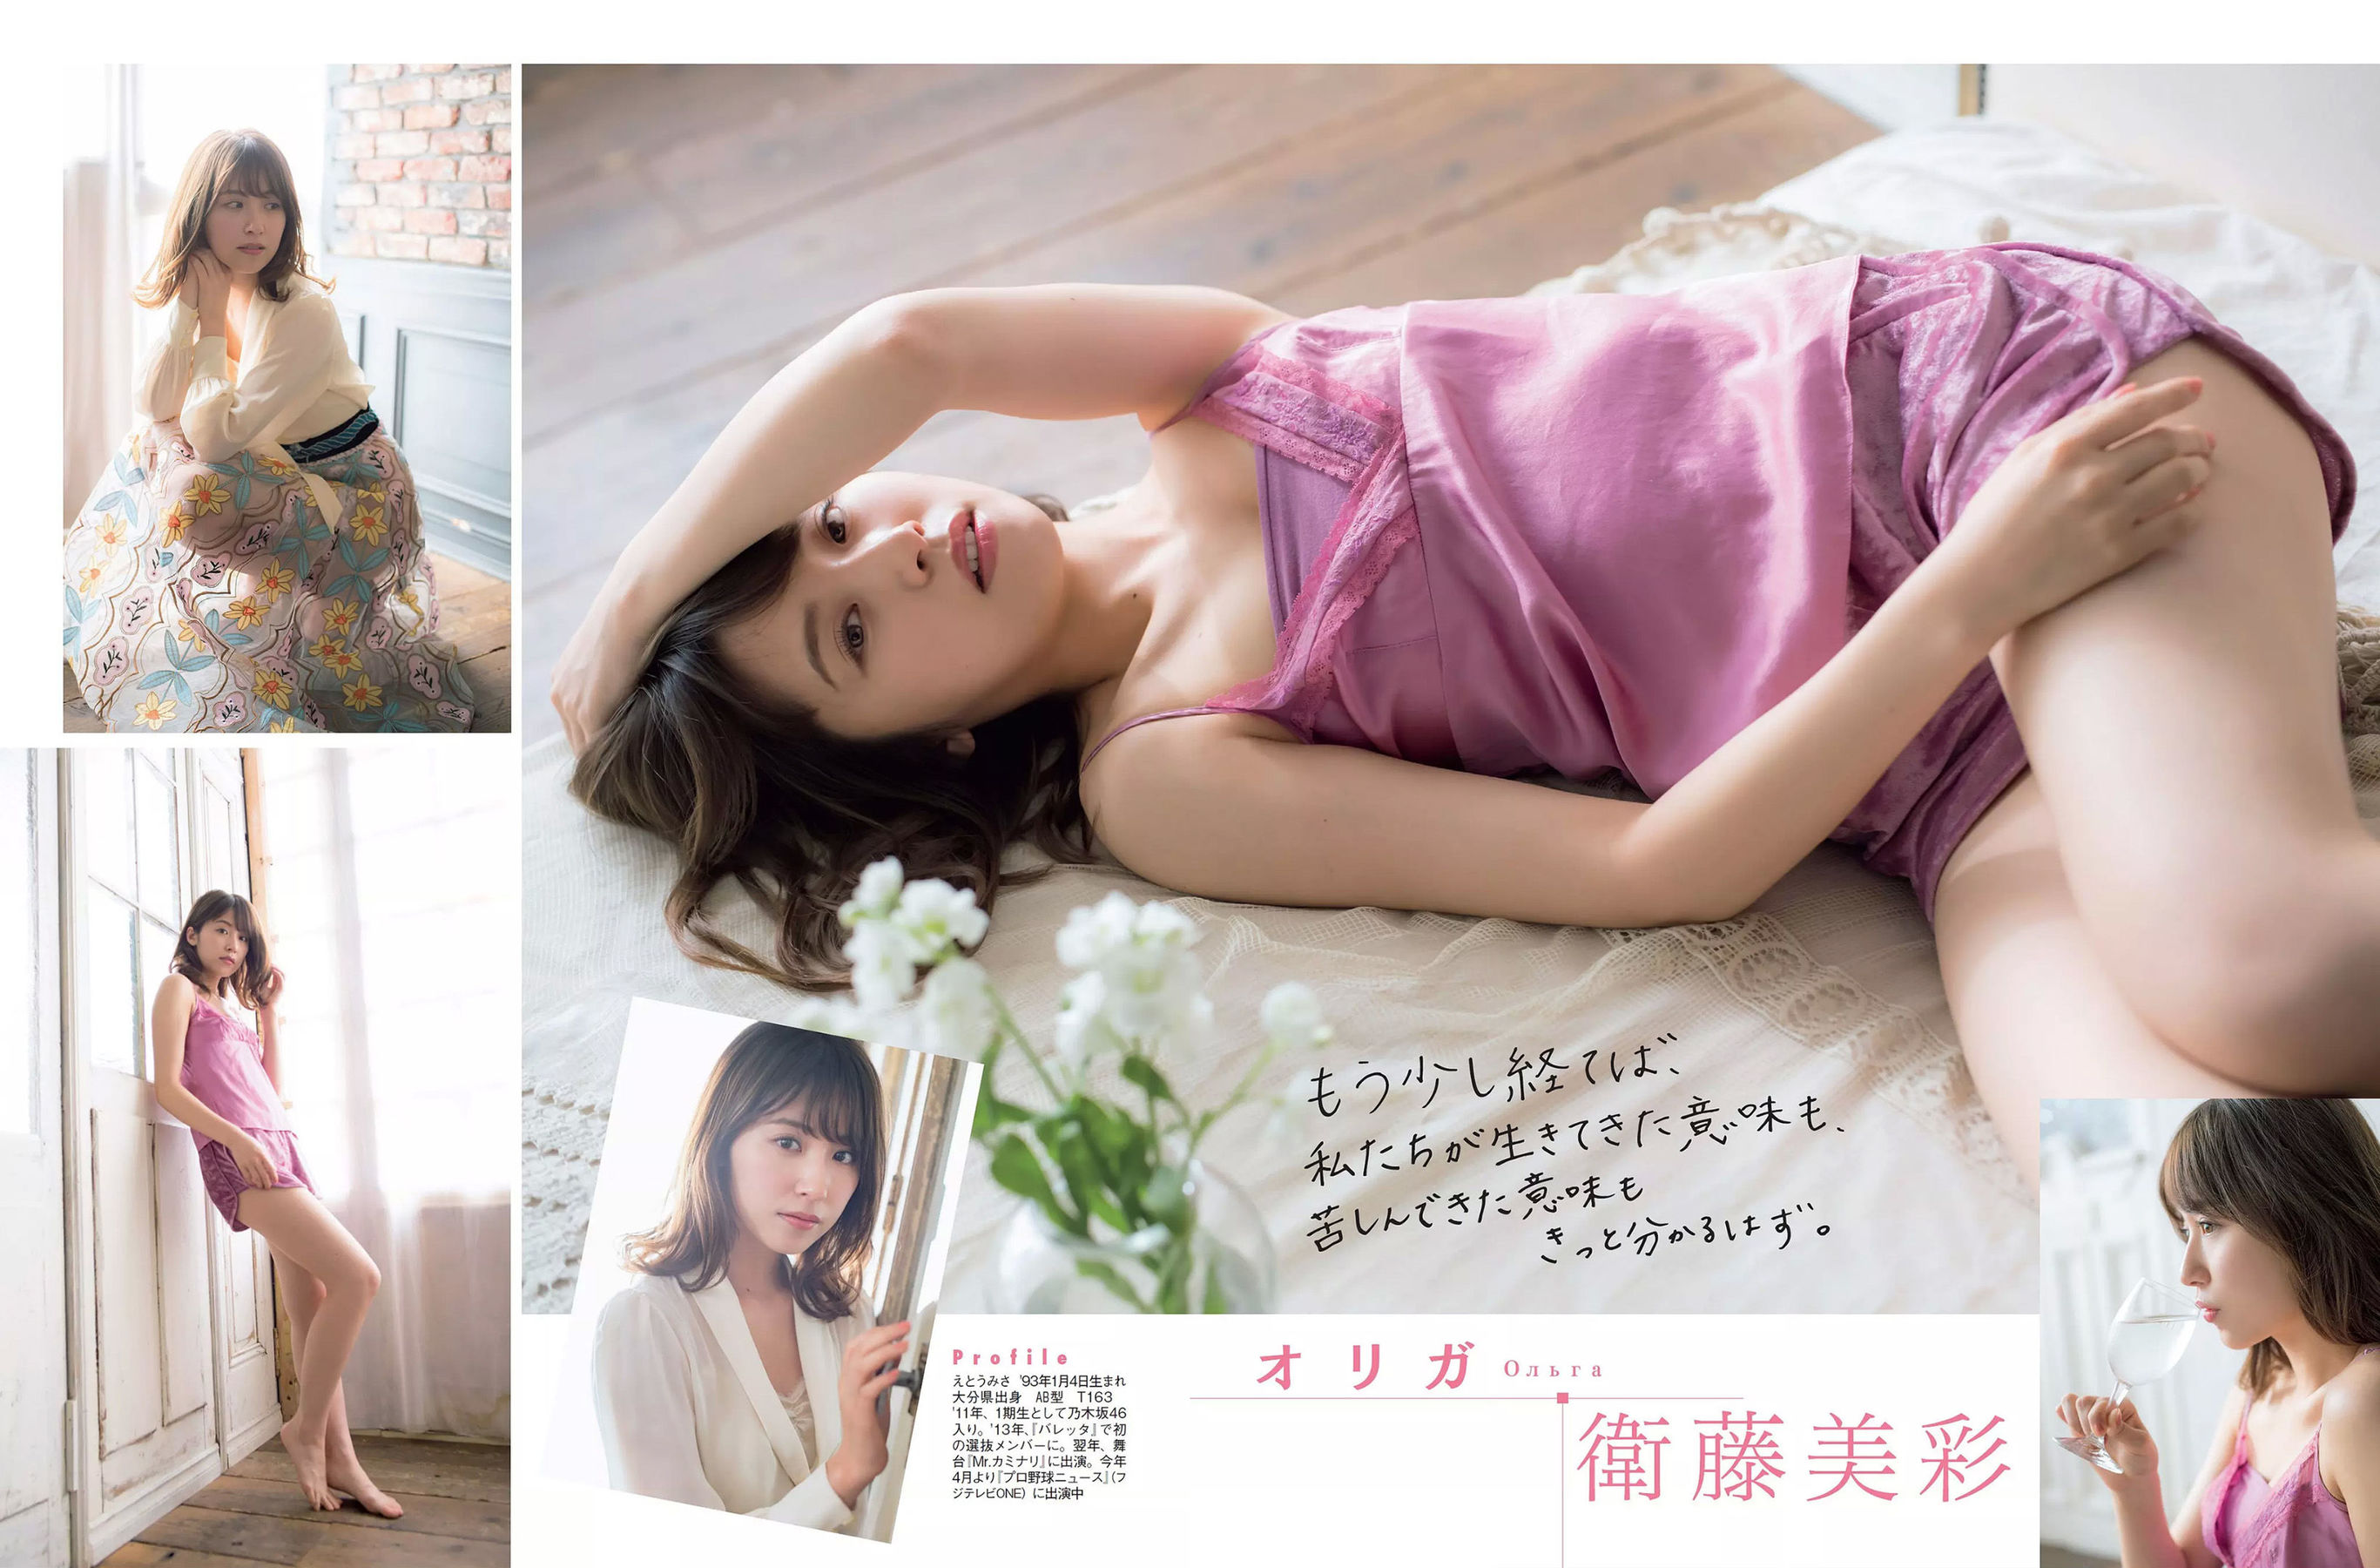 [FLASH]杂志:浅川梨奈高品质私房写真在线浏览(19P)